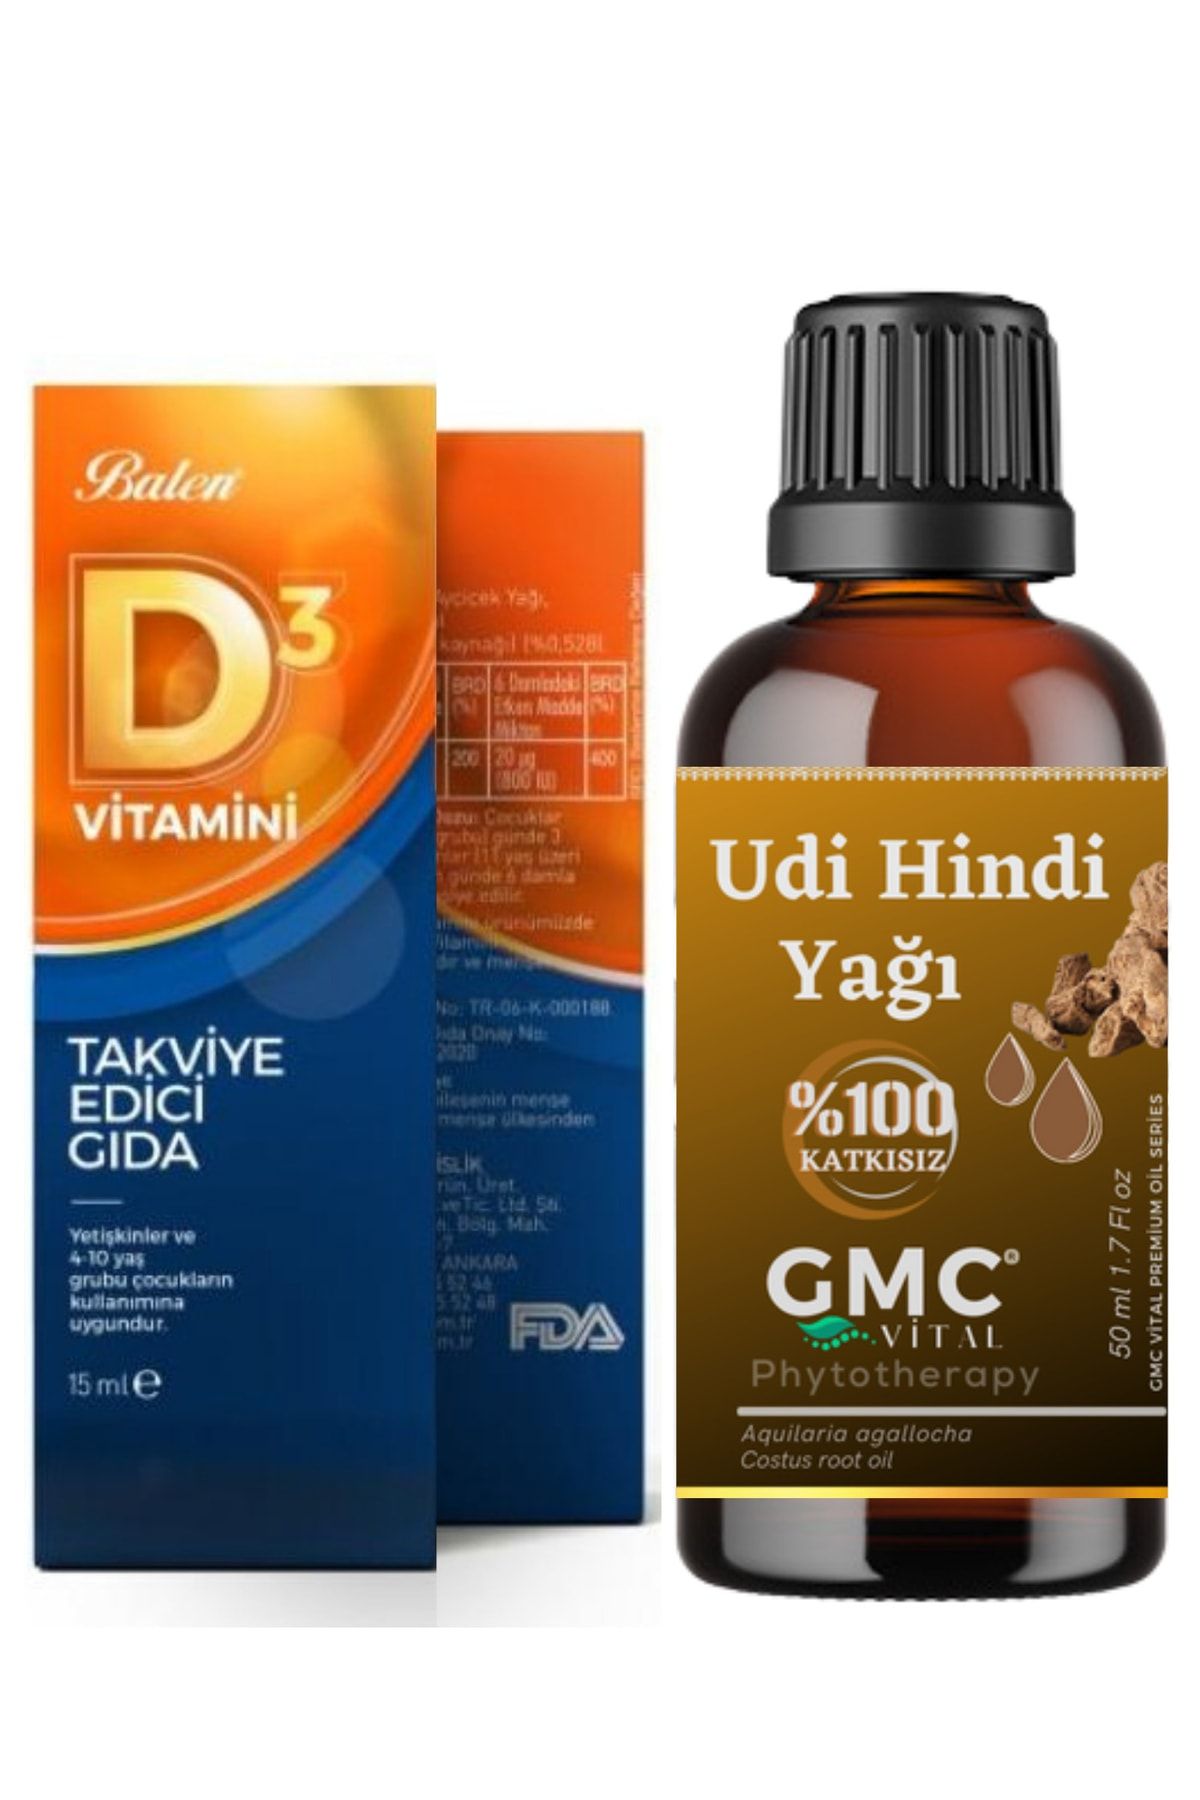 Gmc vital Vitamin D3 + Udi Hindi Yağı Katkısız 50ml